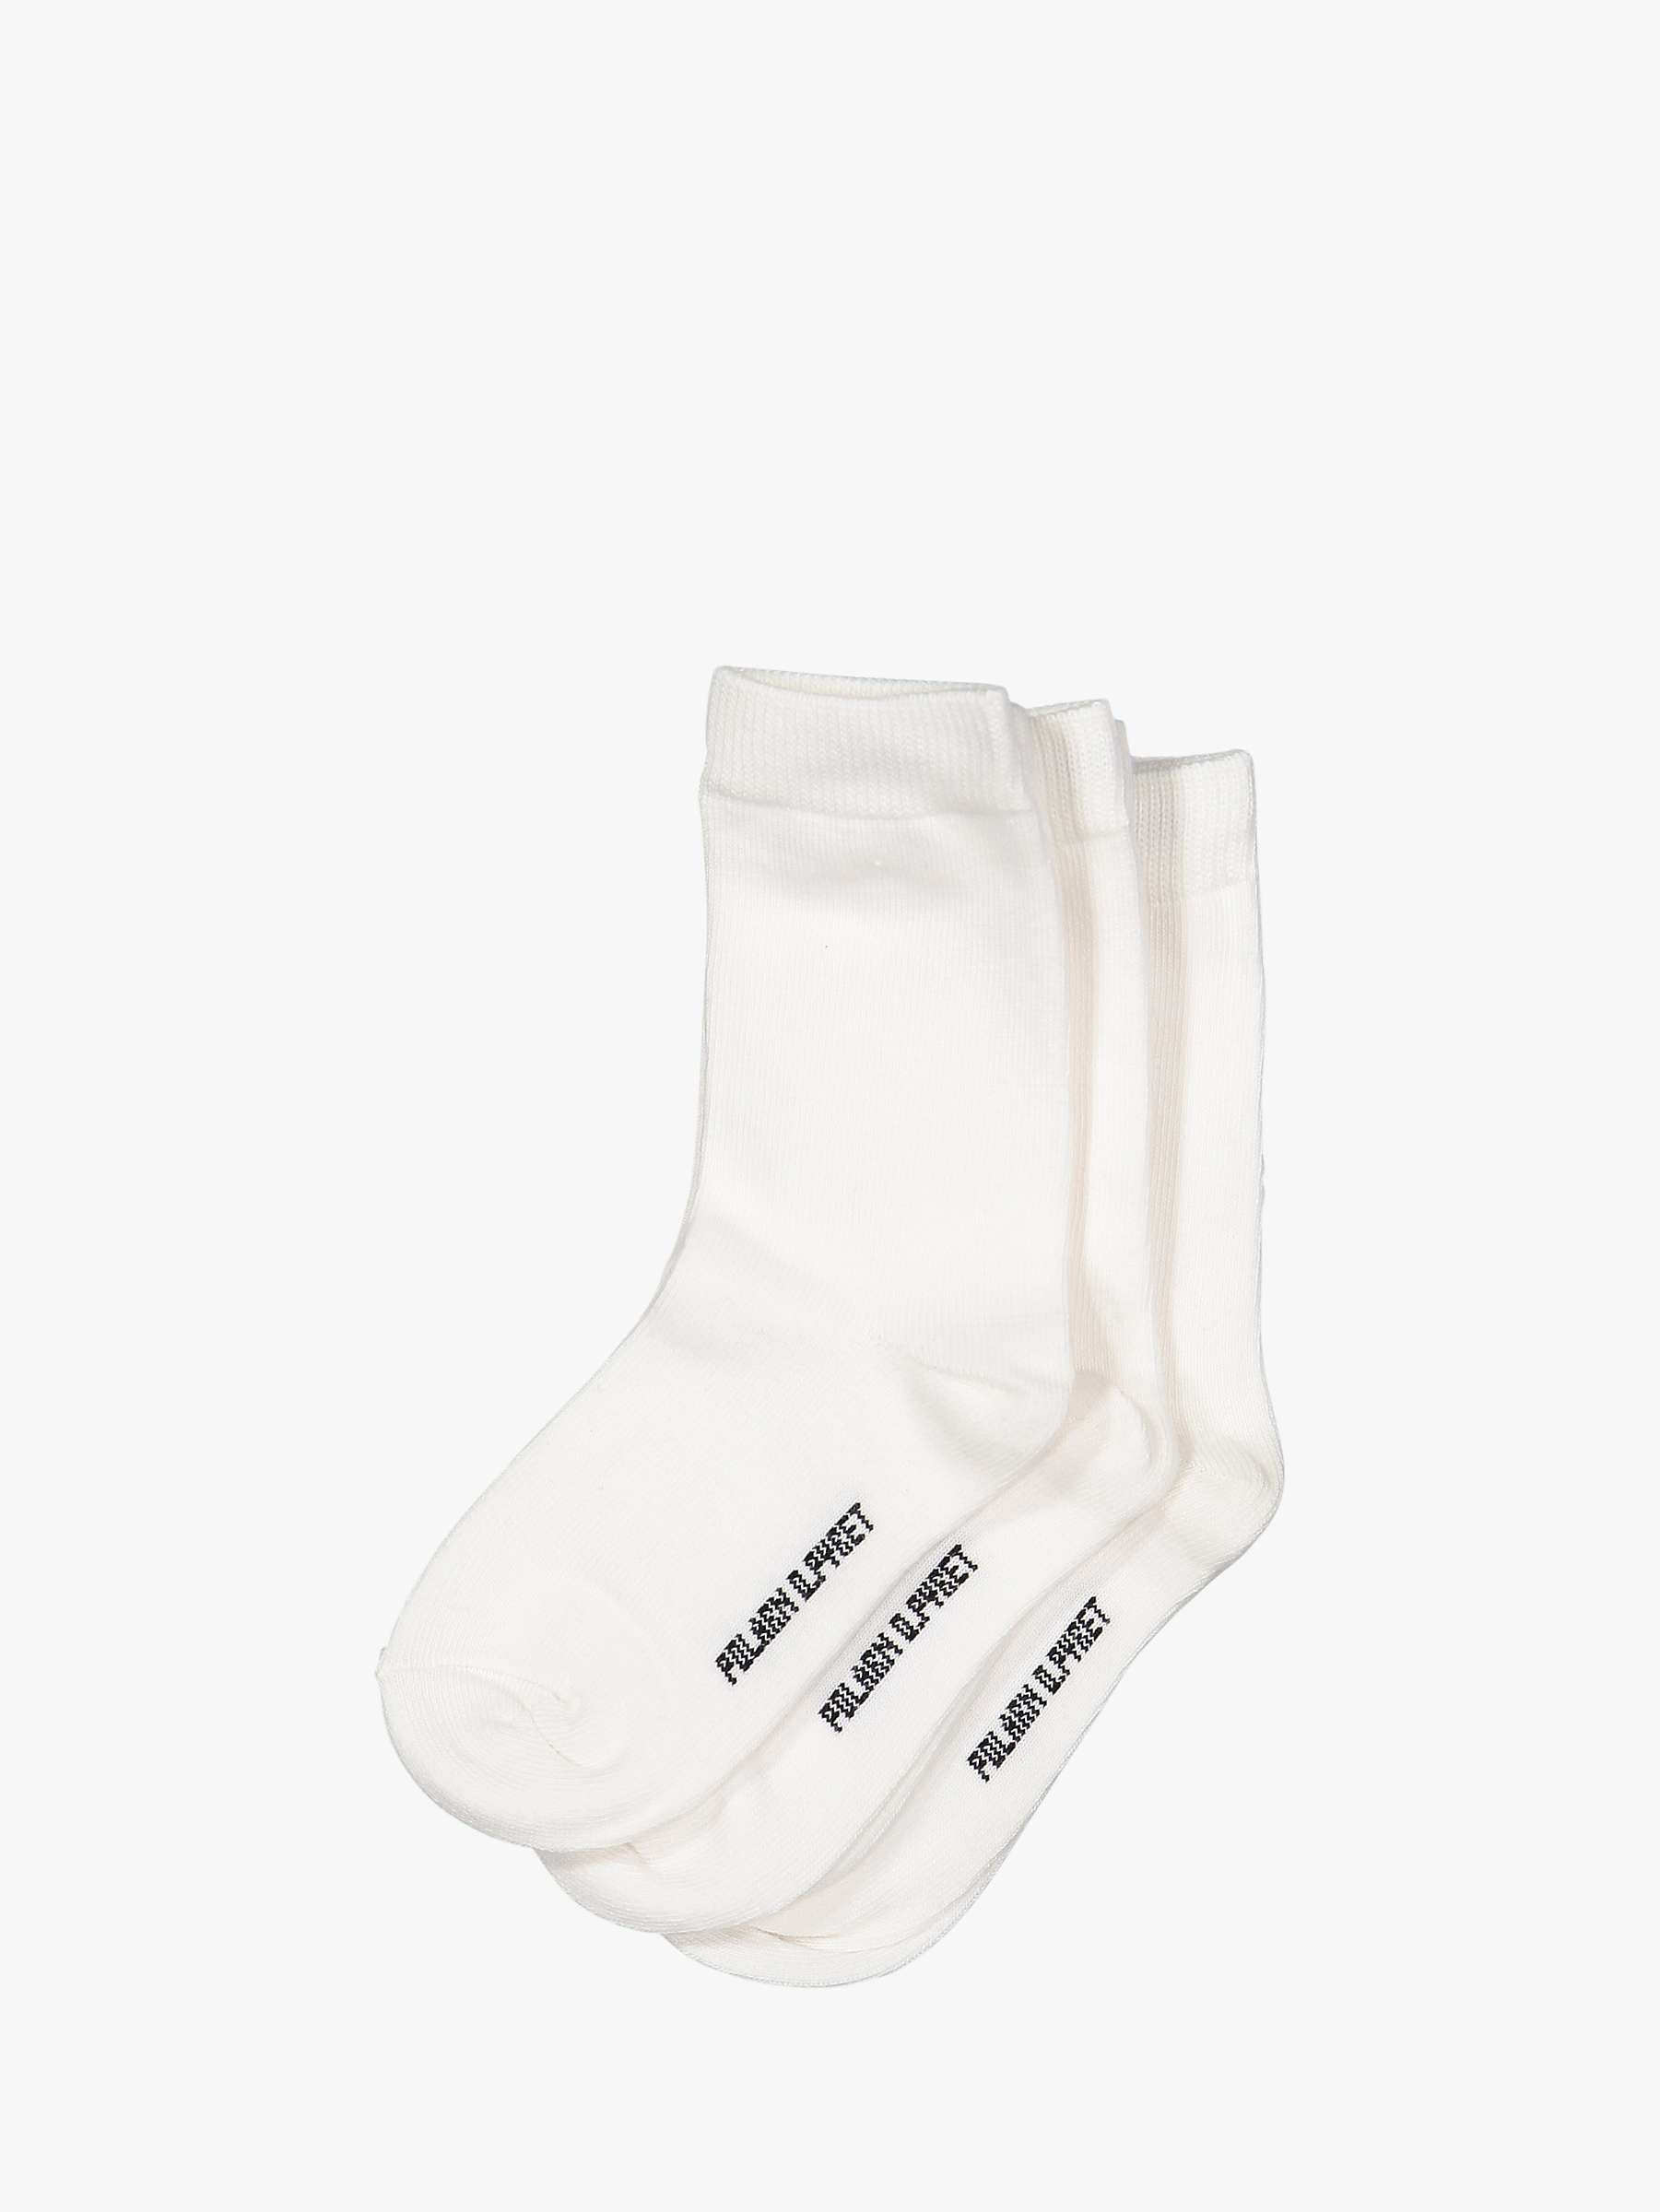 Buy Polarn O. Pyret Children's Plain Socks, Pack of 3 Online at johnlewis.com